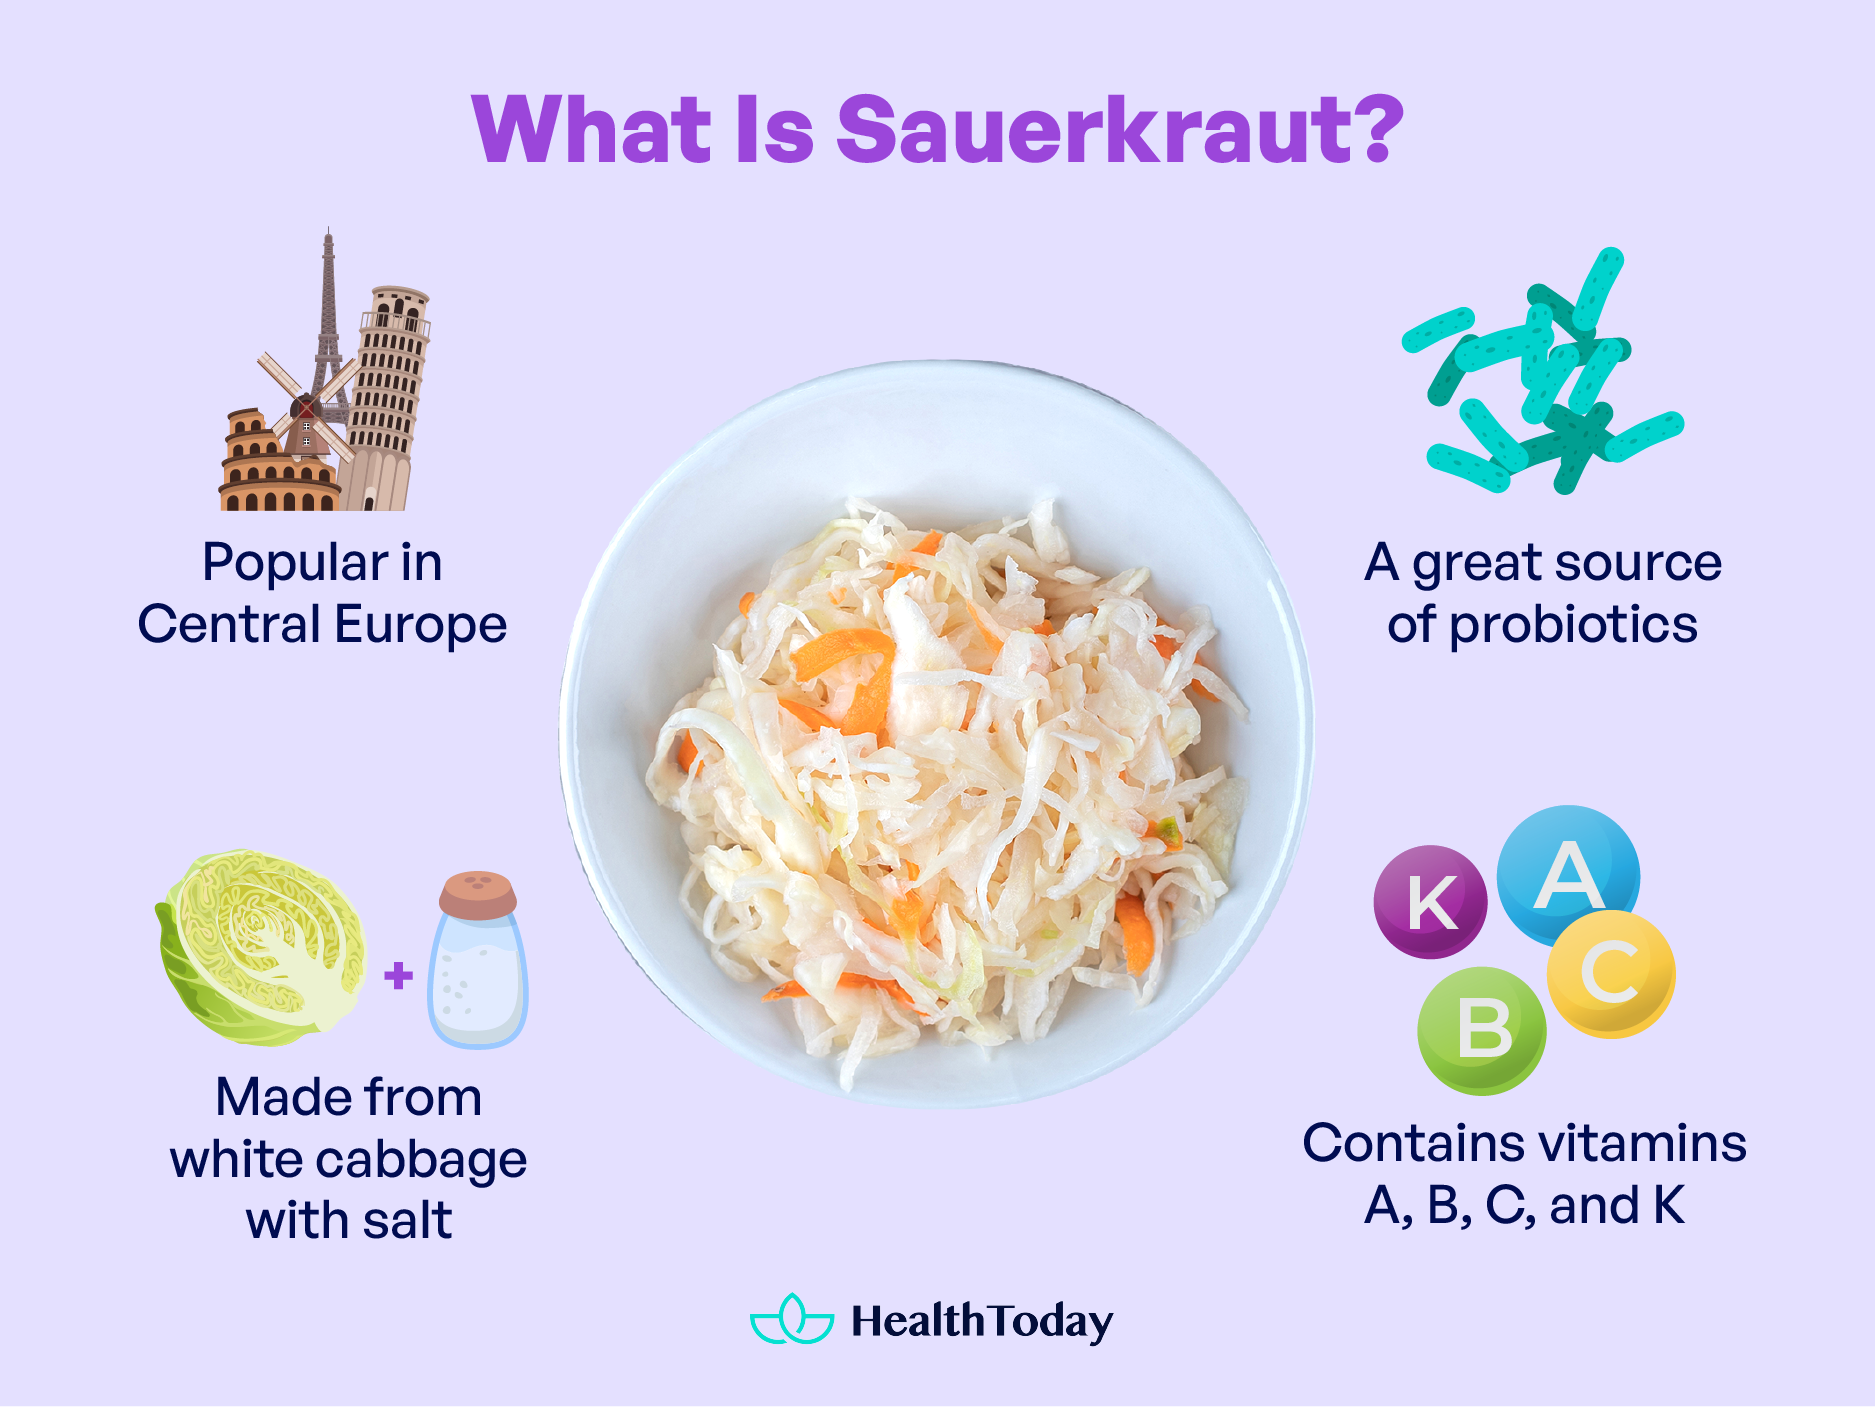 What is sauerkraut